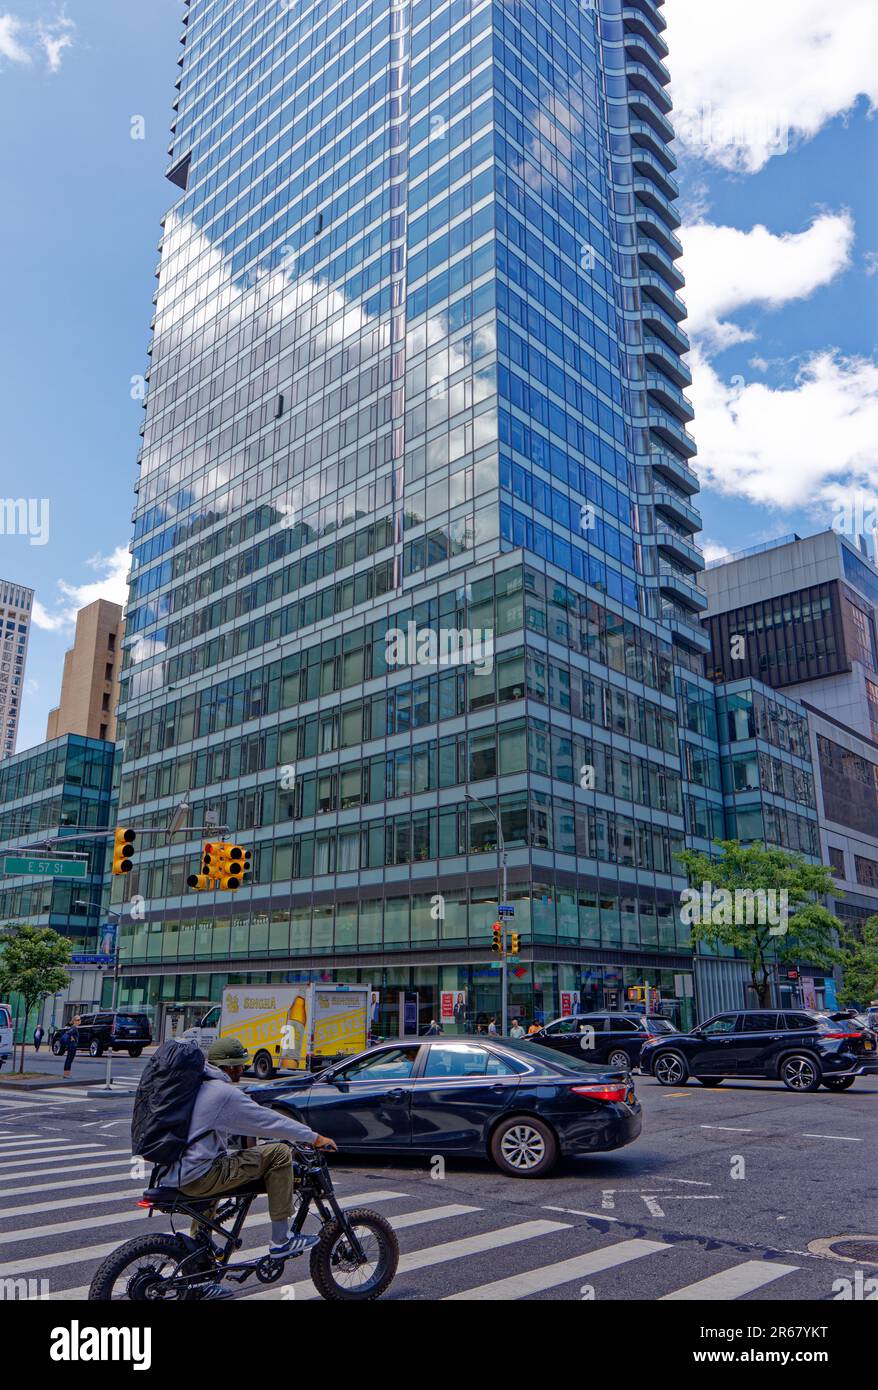 La torre residencial de vidrio azul 252 East 57th Street se encuentra sobre una base de media cuadra que incluye un supermercado y dos escuelas públicas. Foto de stock